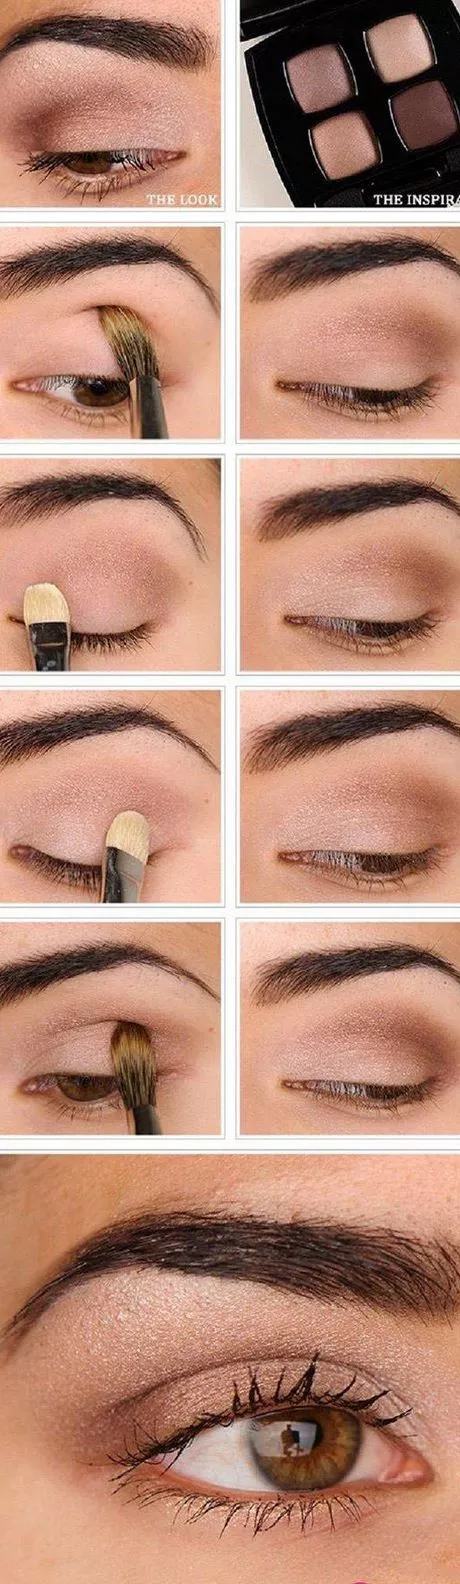 eye-makeup-tutorial-step-by-step-87_12-4 Oog make-up tutorial stap voor stap